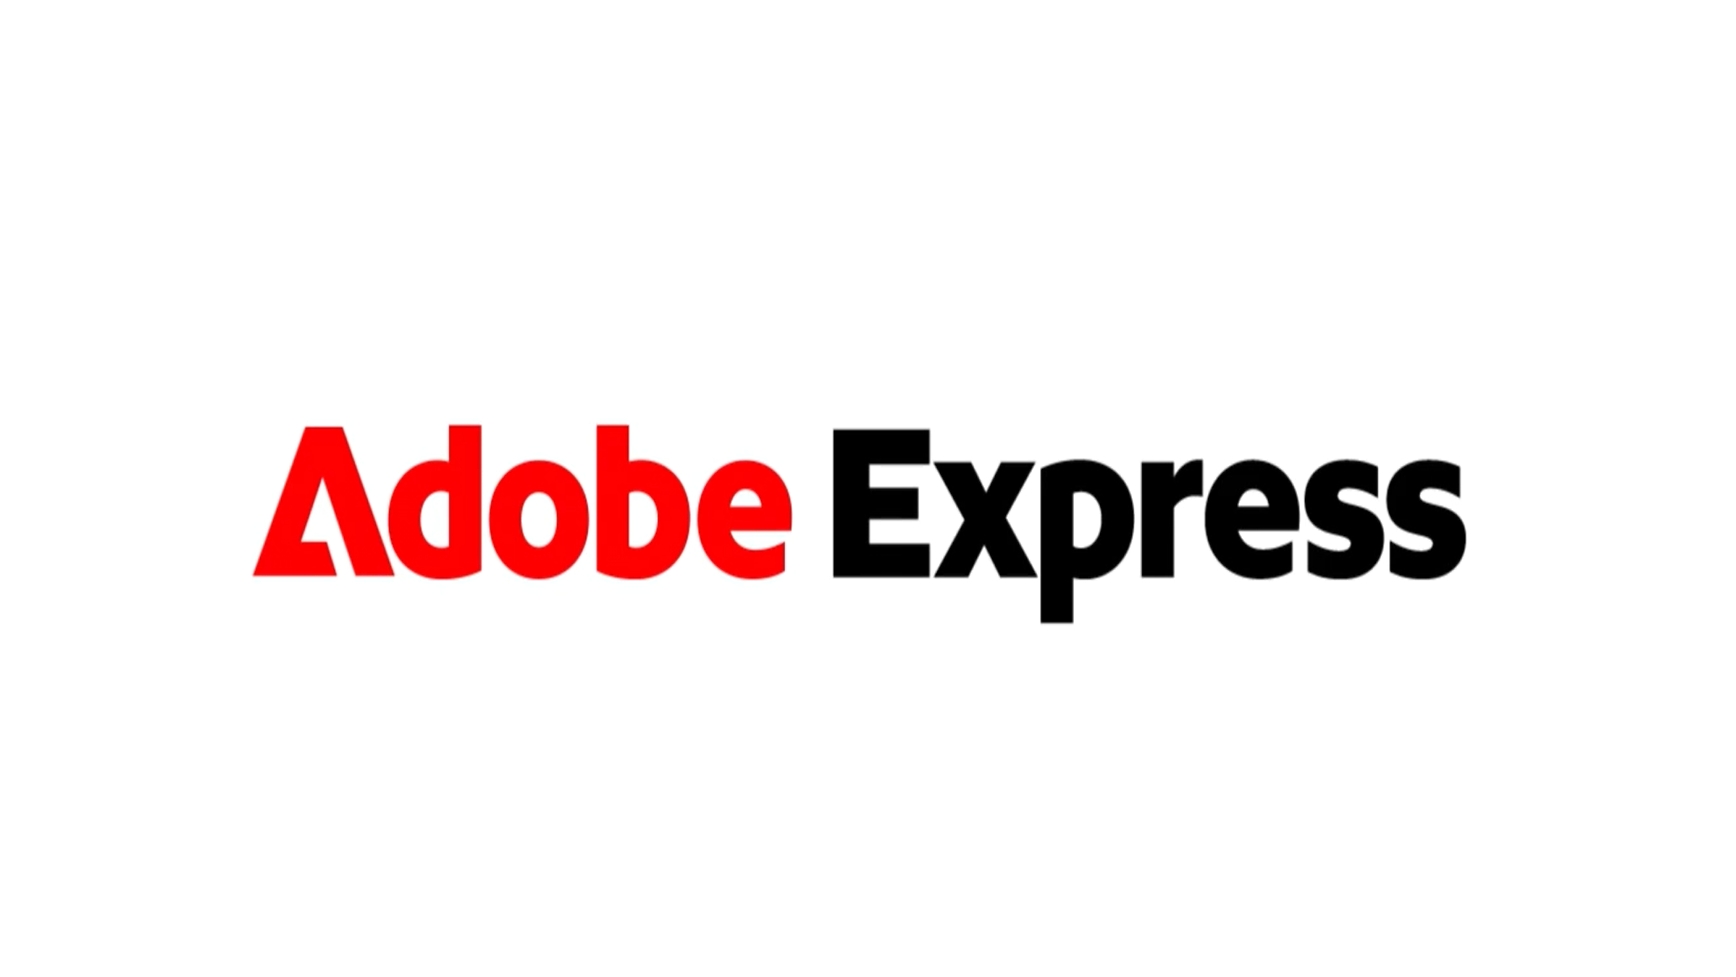 Adobe Express Dengan Integrasi Firefly Kini boleh Dimuat Turun- RM23.95 Sebulan Untuk 100 Kredit